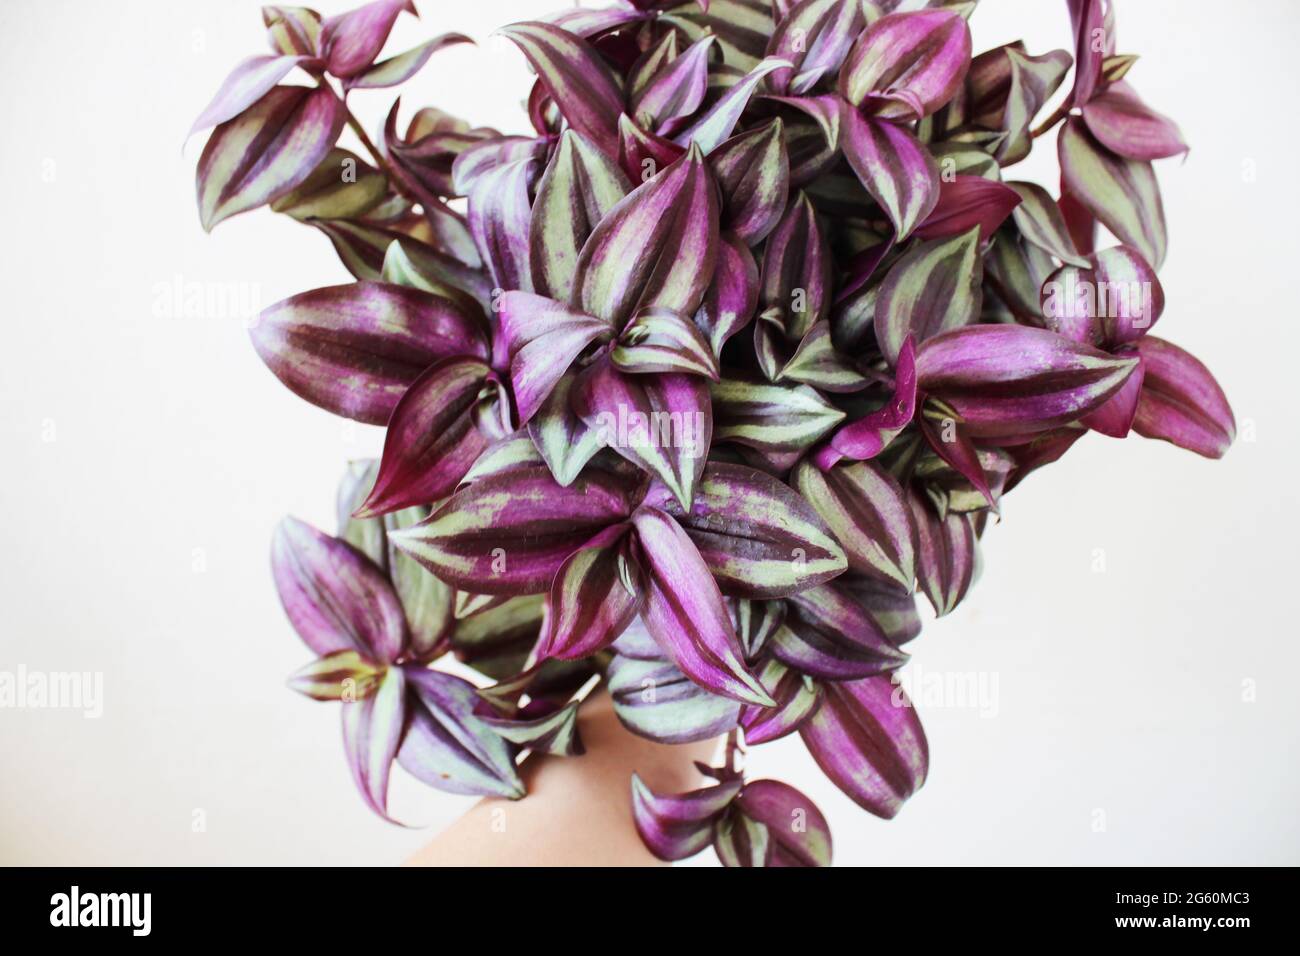 Tradescantia zebrina, conosciuta anche come pianta di pollice o giudeo vagabondante. Foto Stock